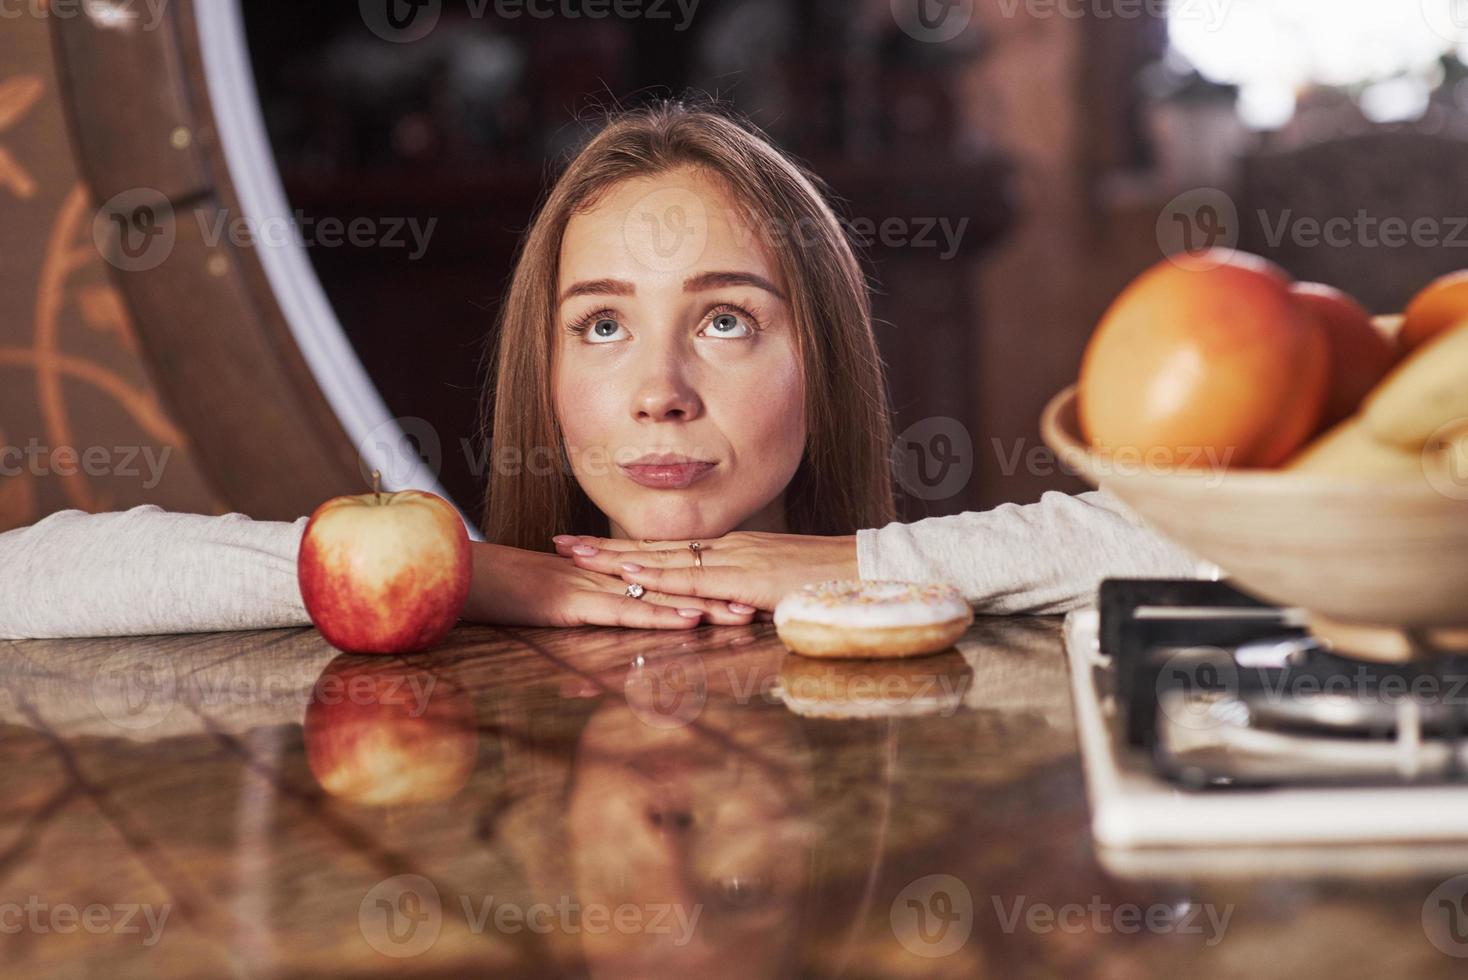 grappig gezicht maken. schattige jonge huisvrouw leunend op de tafel met appel en koekje en kijkt op foto